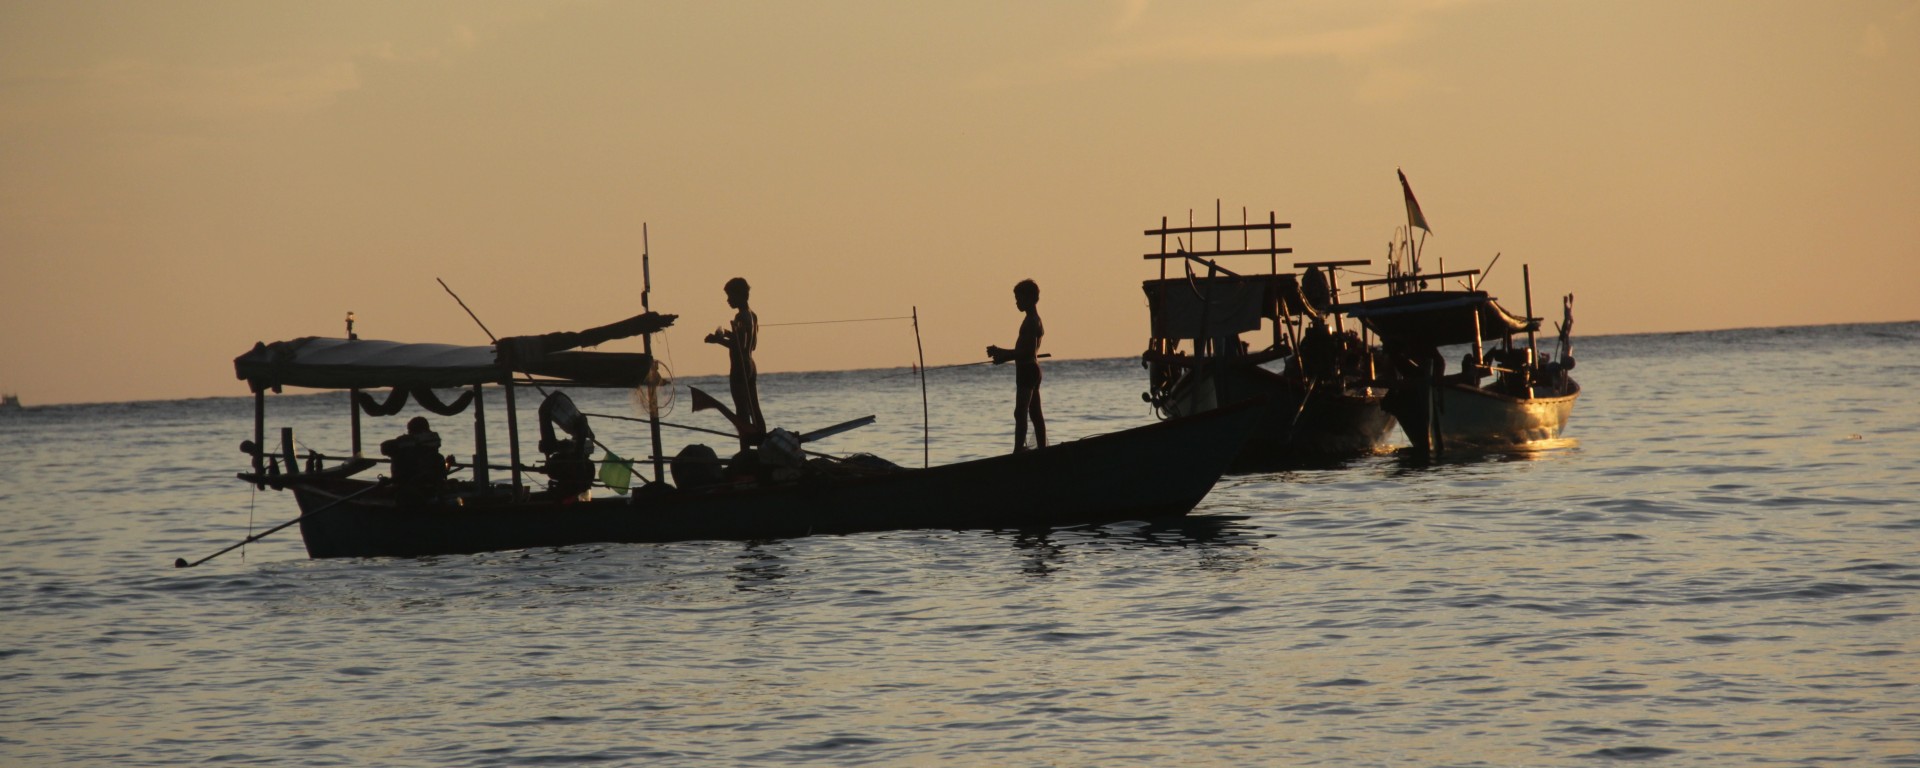 Dernière pêche de la journée au soleil couchant (© Aurélie Bacheley).